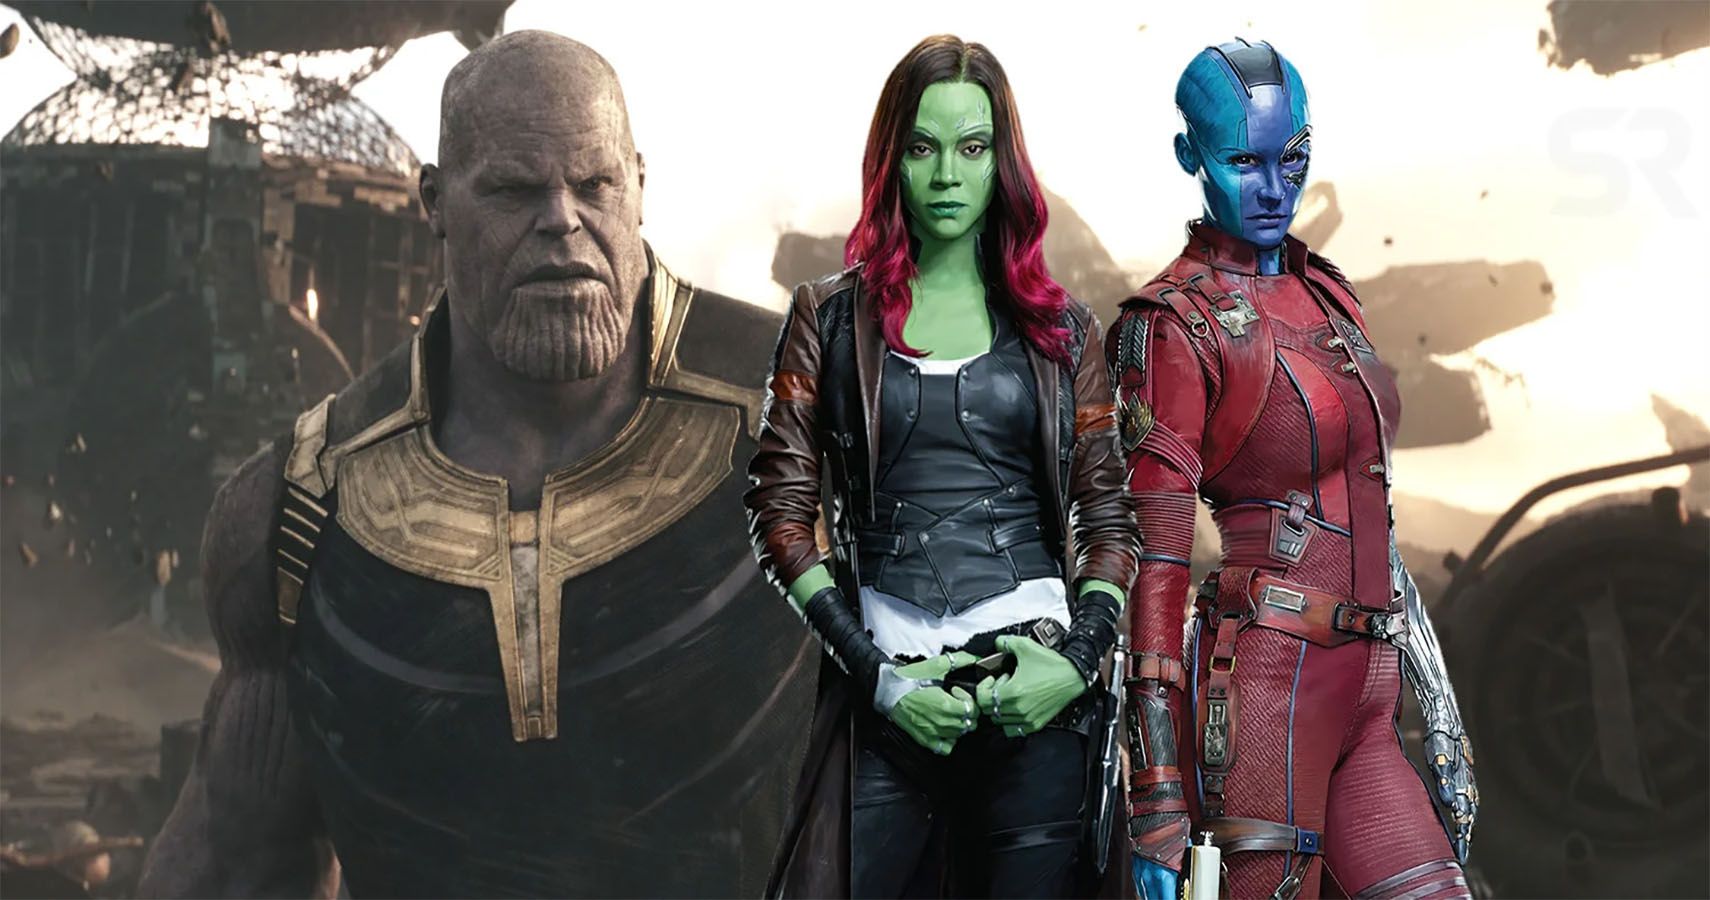 Gamora and Nebula super imposed over Thanos